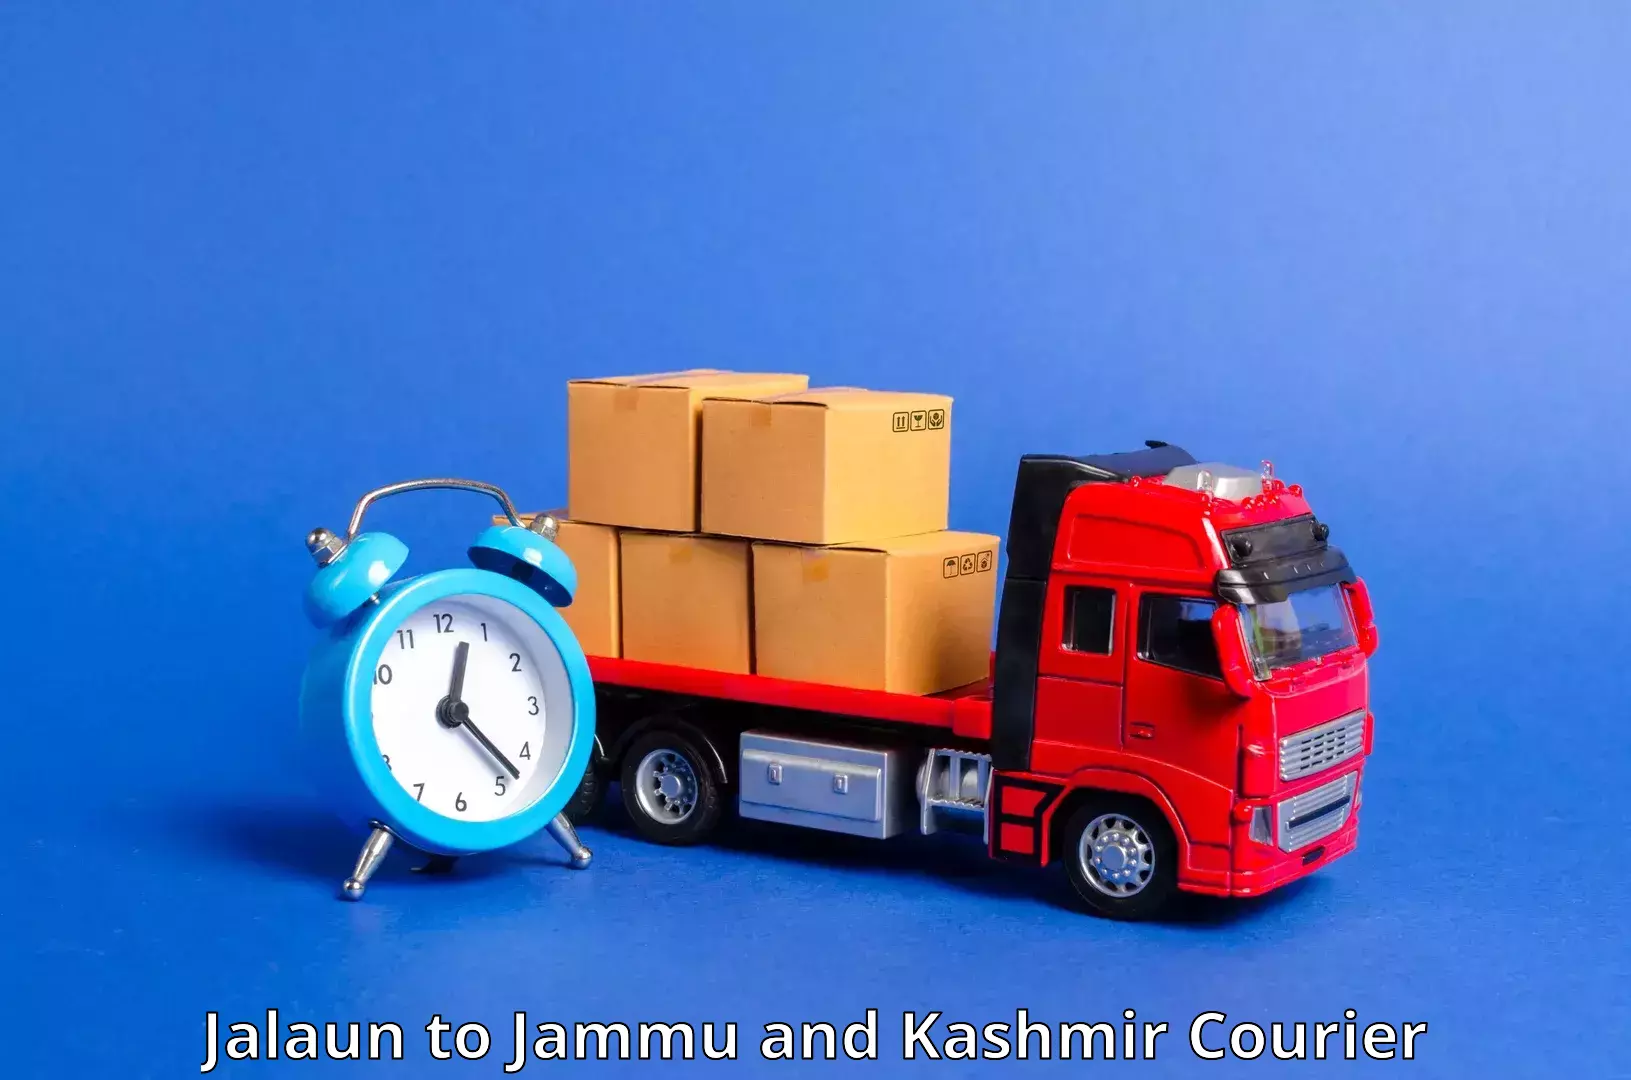 Efficient freight service Jalaun to Leh